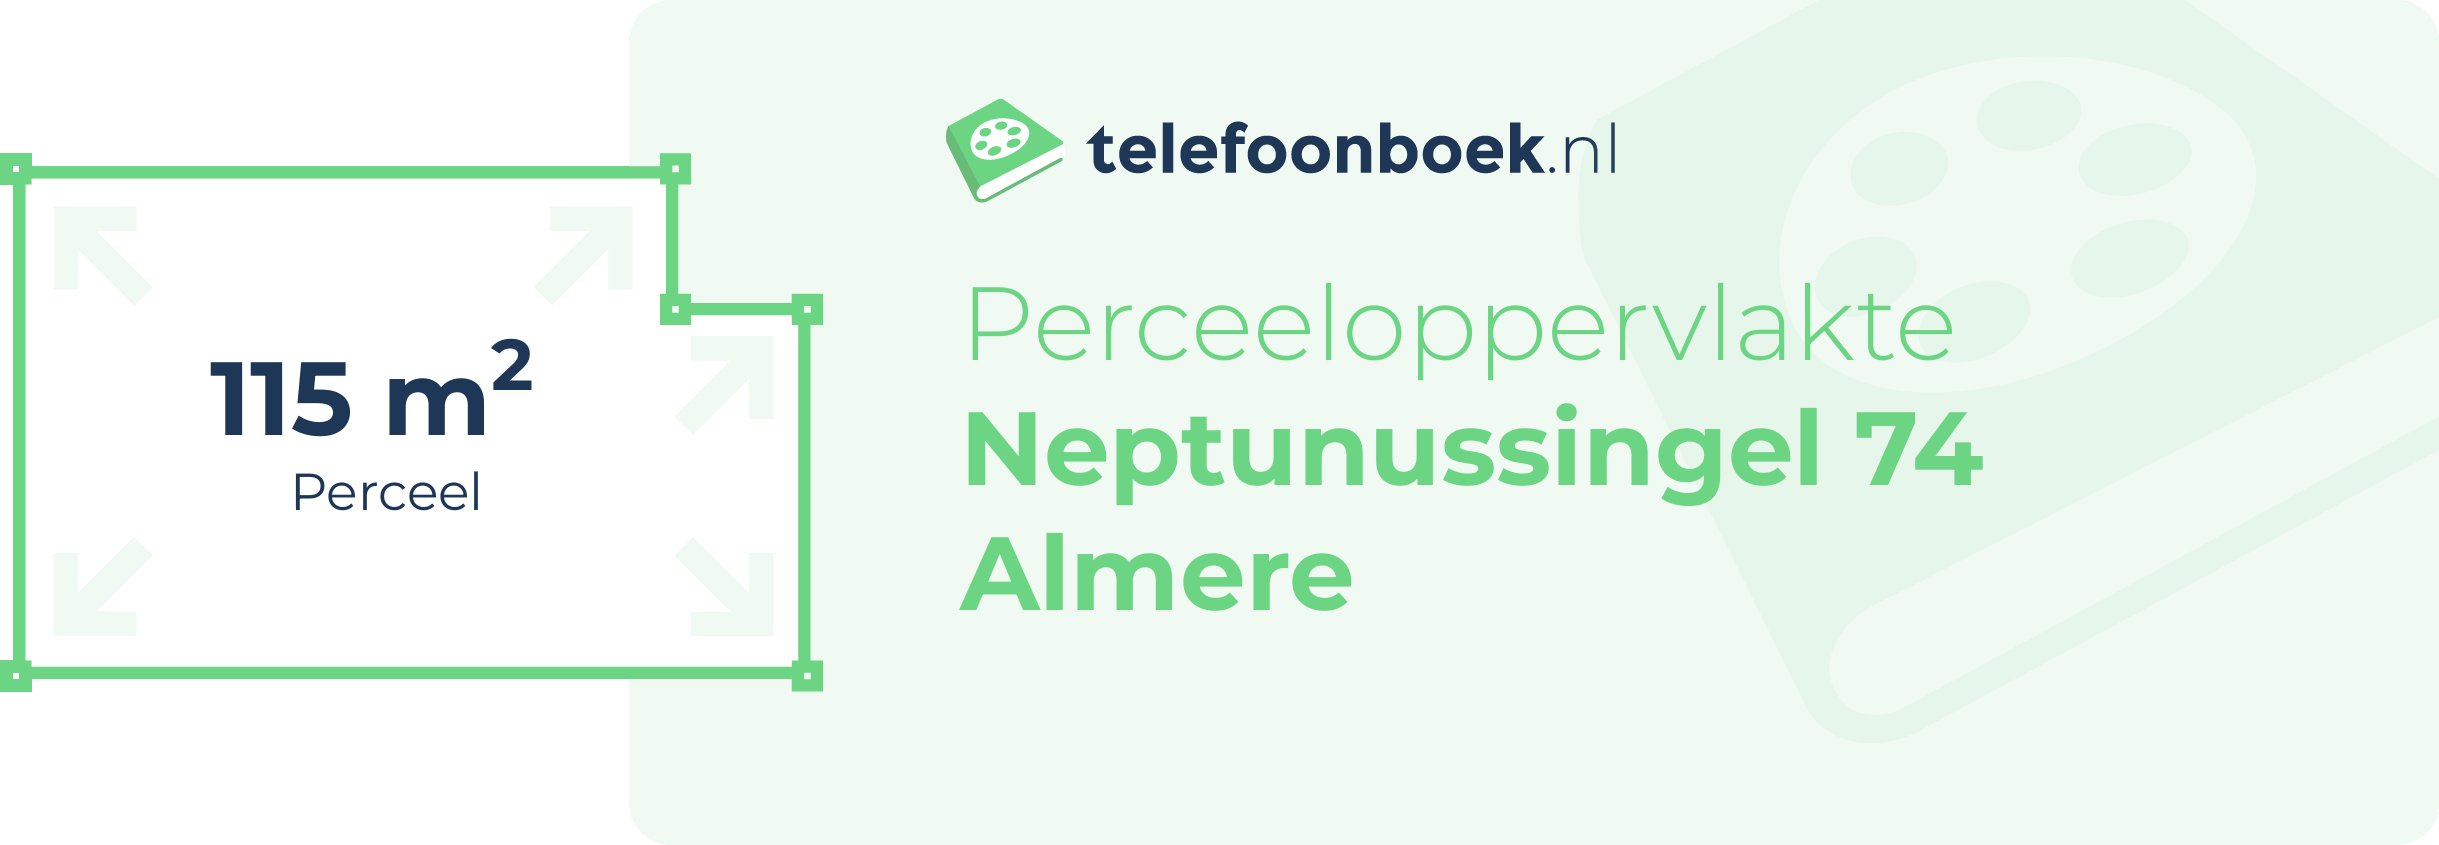 Perceeloppervlakte Neptunussingel 74 Almere